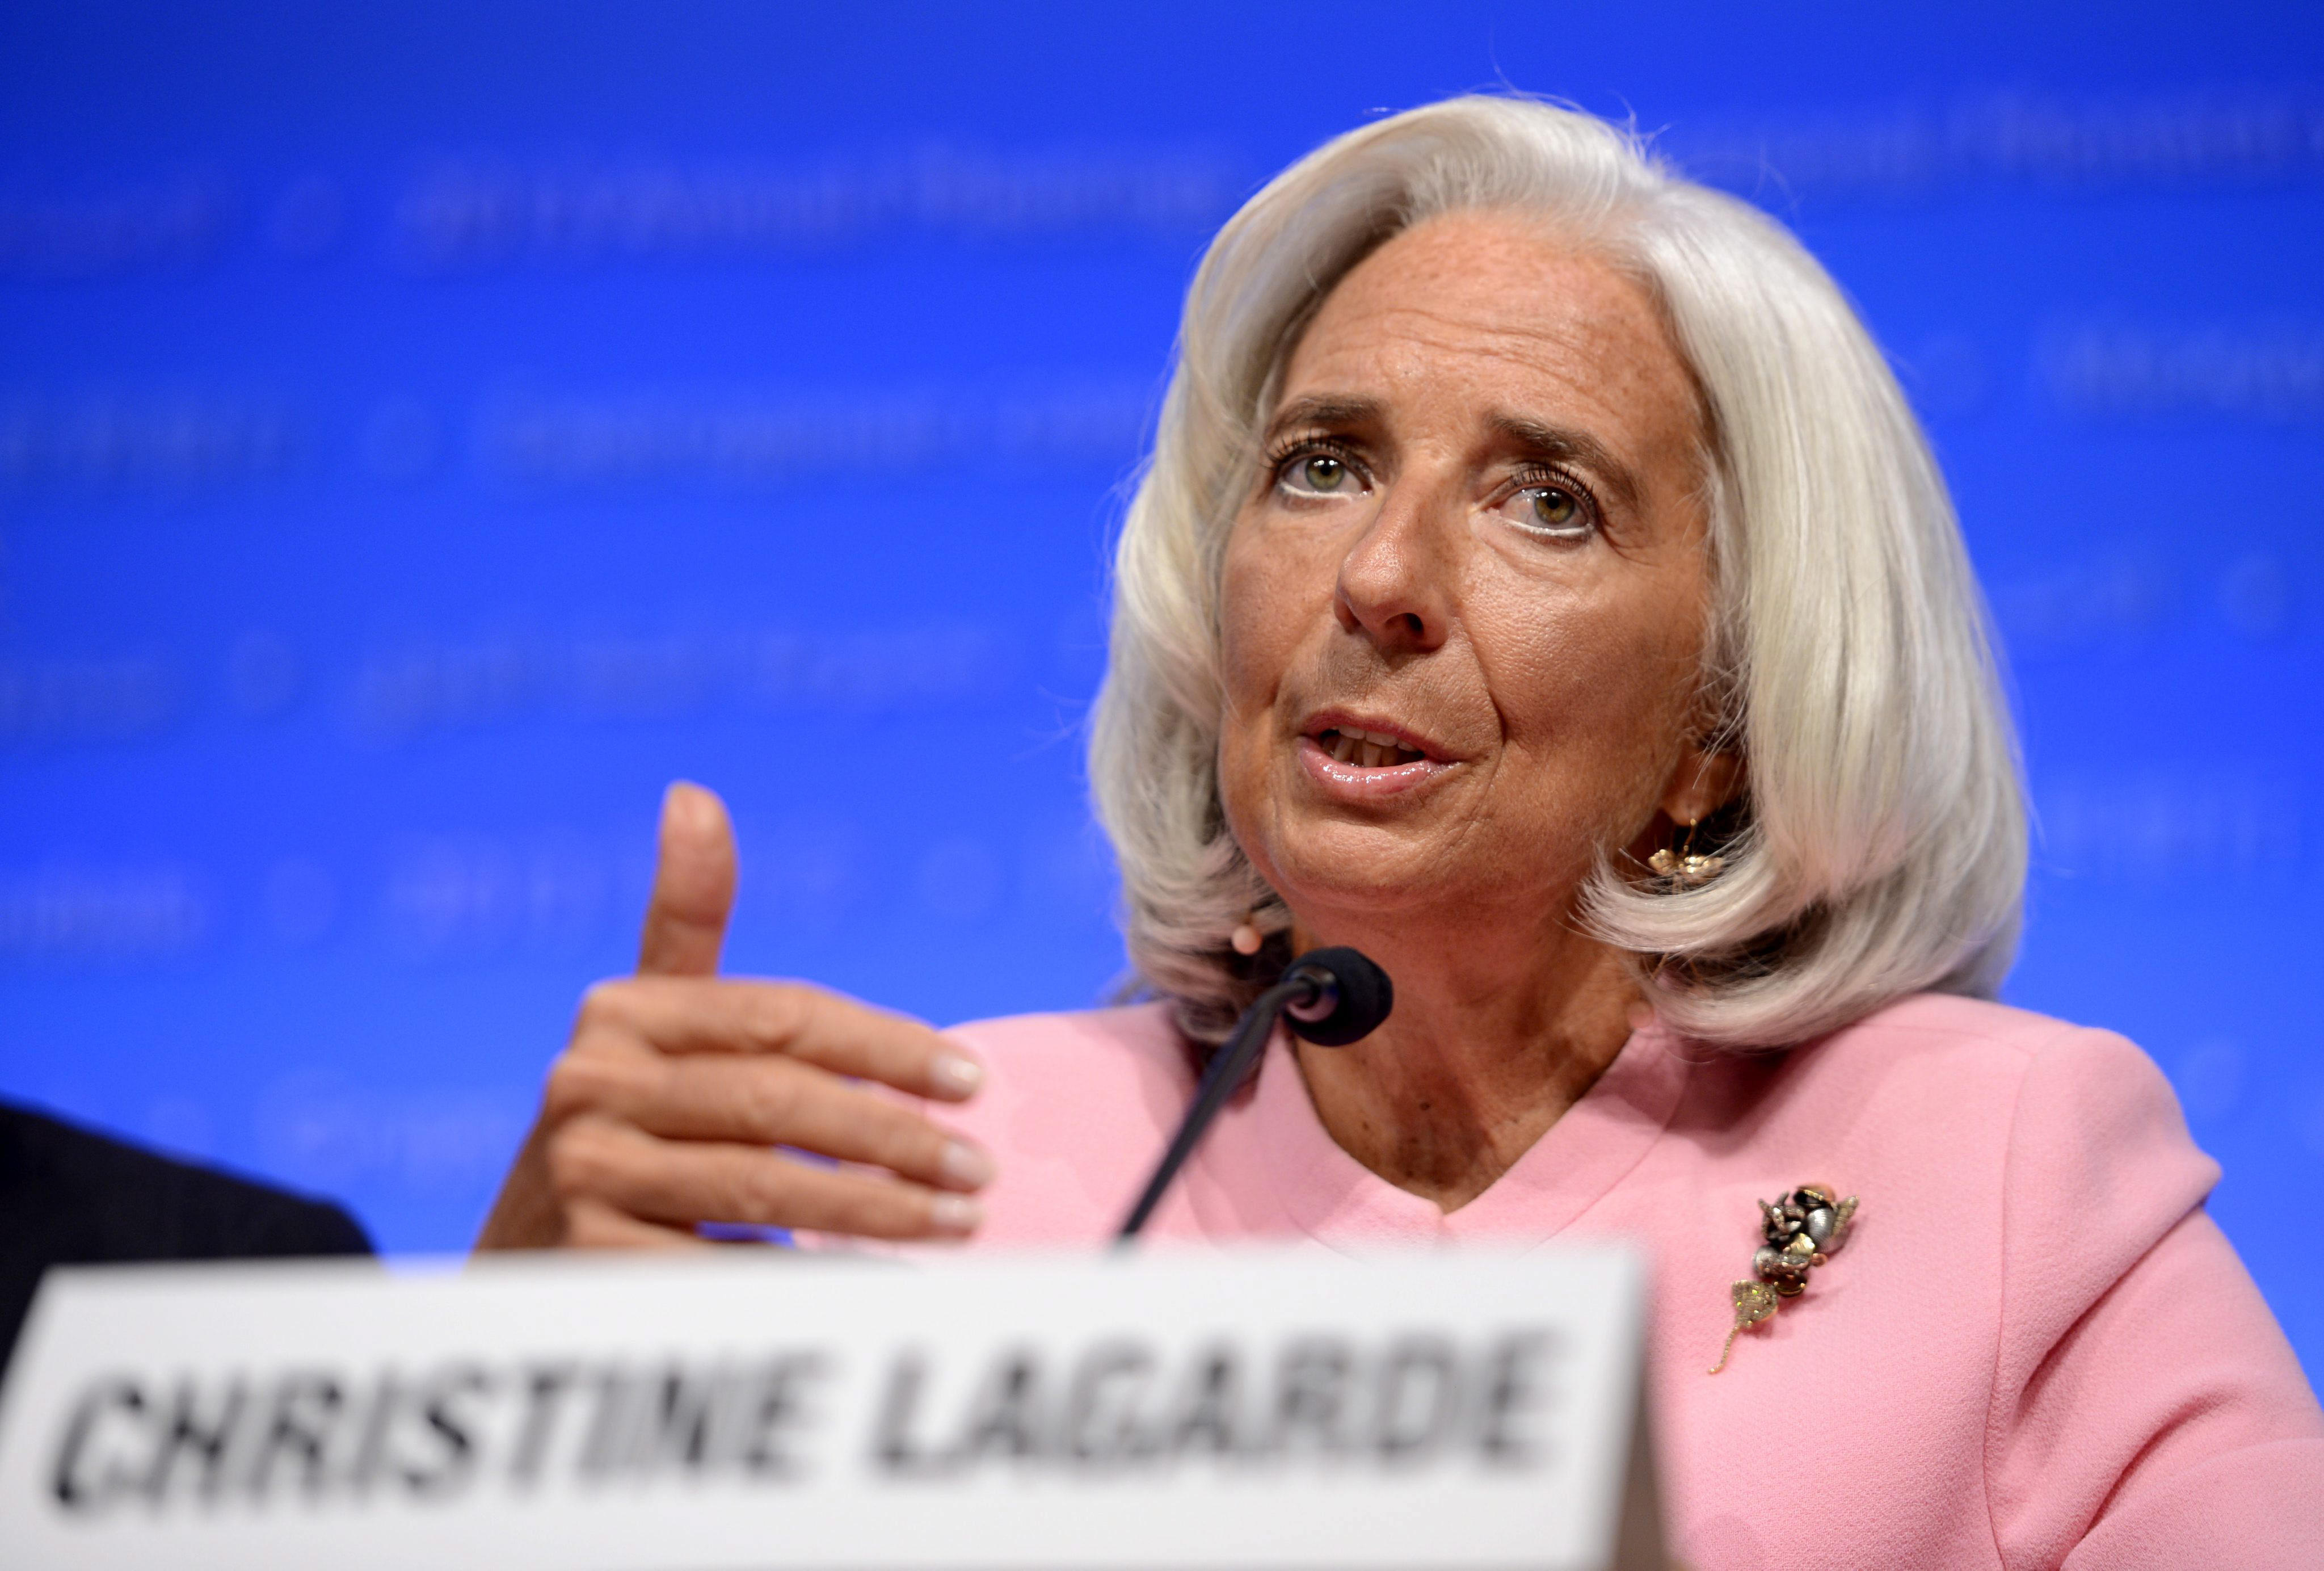 El FMI ve signos de mejora en España, pero riesgos en el crédito